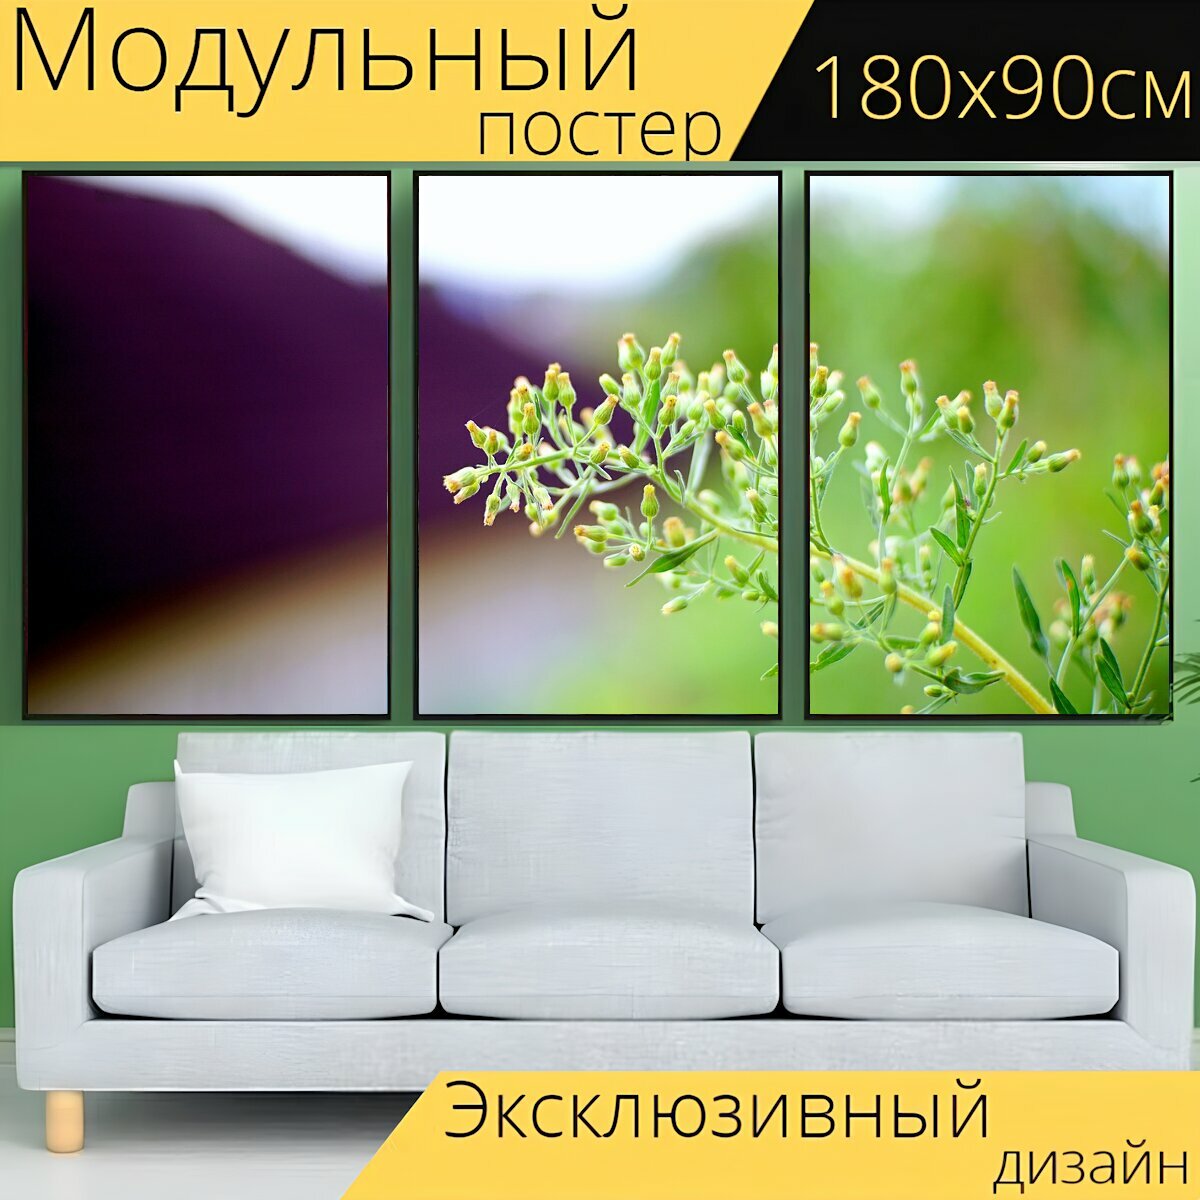 Модульный постер "Природа, лист, флора" 180 x 90 см. для интерьера